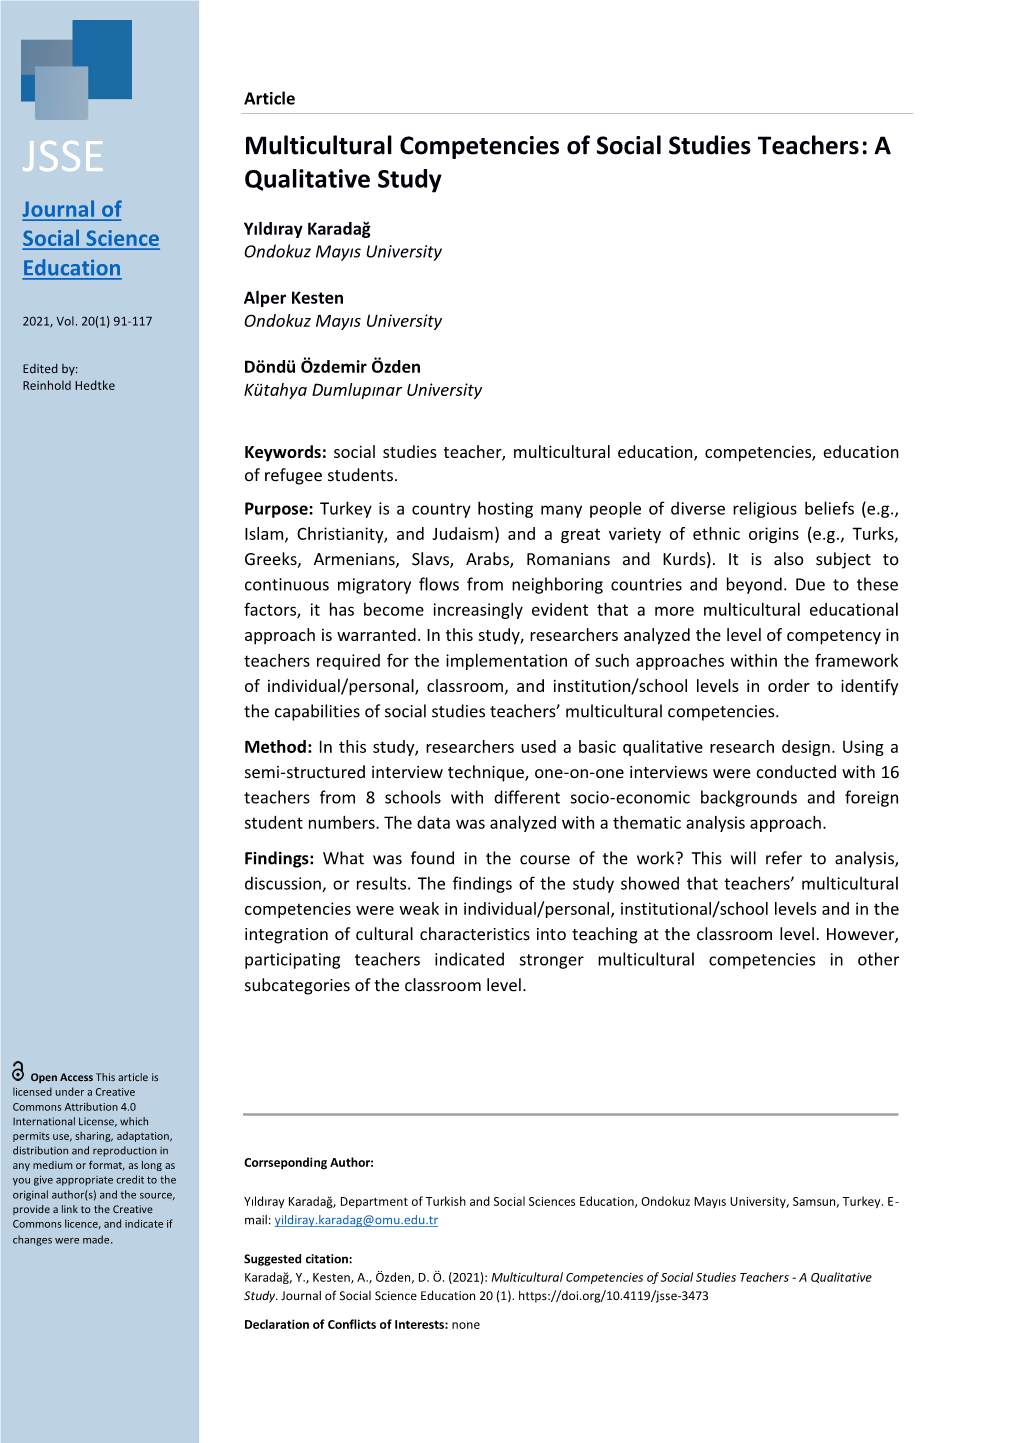 Multicultural Competencies of Social Studies Teachers: a Qualitative Study